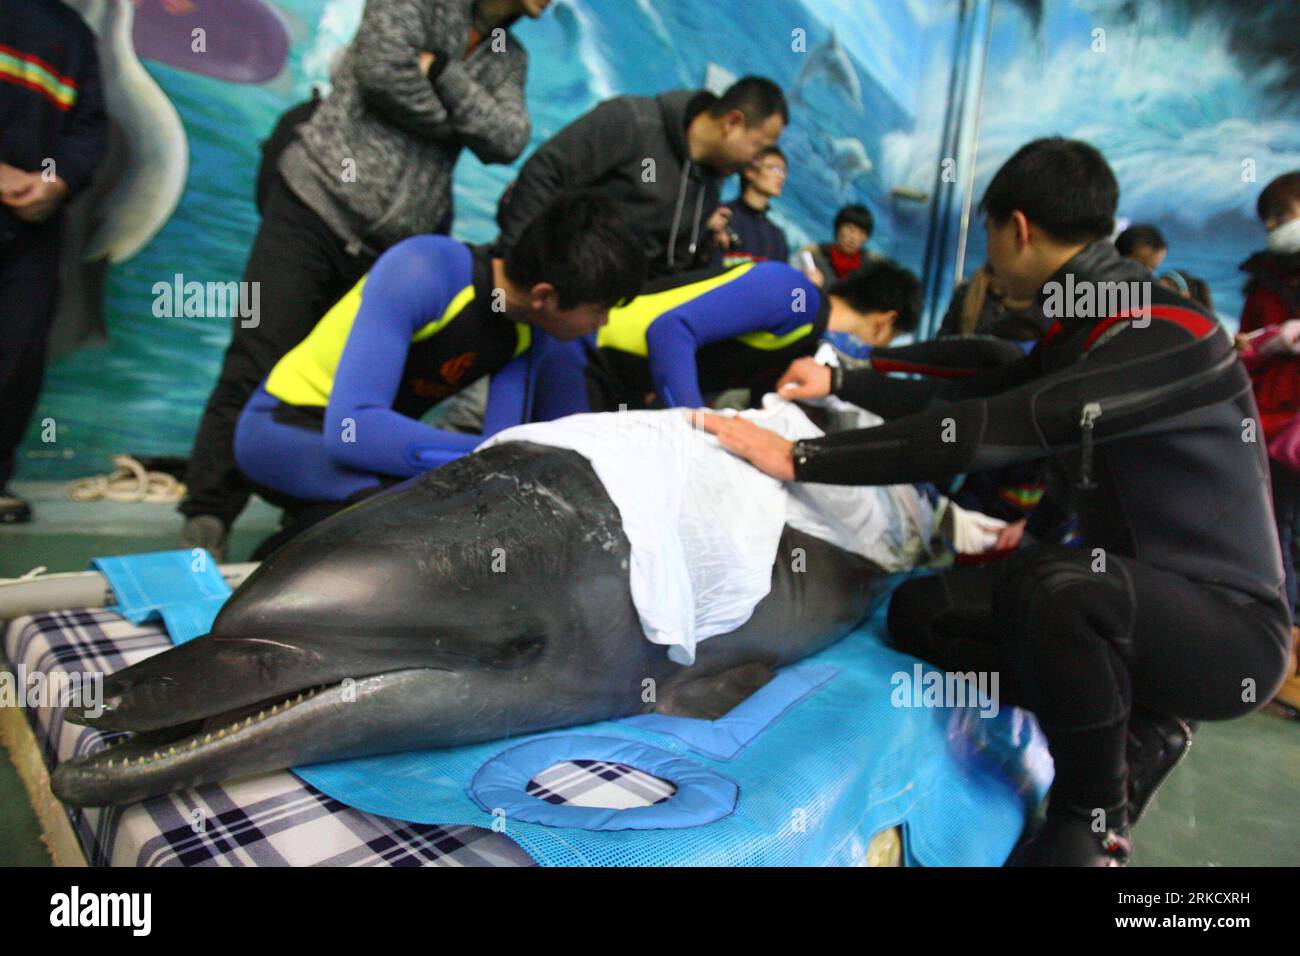 Bildnummer: 54825692 Datum: 17.01.2011 Copyright: Imago/Xinhua (110117) -- NINGBO, 17 de enero de 2011 (Xinhua) -- Los miembros del personal del acuario Ningbo Ocean World miden un delfín recién llegado en Ningbo, provincia de Zhejiang del este de China, 17 de enero de 2011. Tres delfines fueron transportados aquí desde Japón el lunes, y se instalarían en Ningbo Ocean World. Cada uno de los delfines, de 2,2 a 2,5 metros de longitud, pesa más de 200 kilogramos. (Xinhua/Zhang Peijian) (hdt) CHINA-JAPÓN-DOLPHIN-TRANSPORT-ARRIVAL (CN) PUBLICATIONxNOTxINxCHN Gesellschaft Tiere Fotostory Transport Delfin Tiertransport kbdig xub 201 Foto de stock